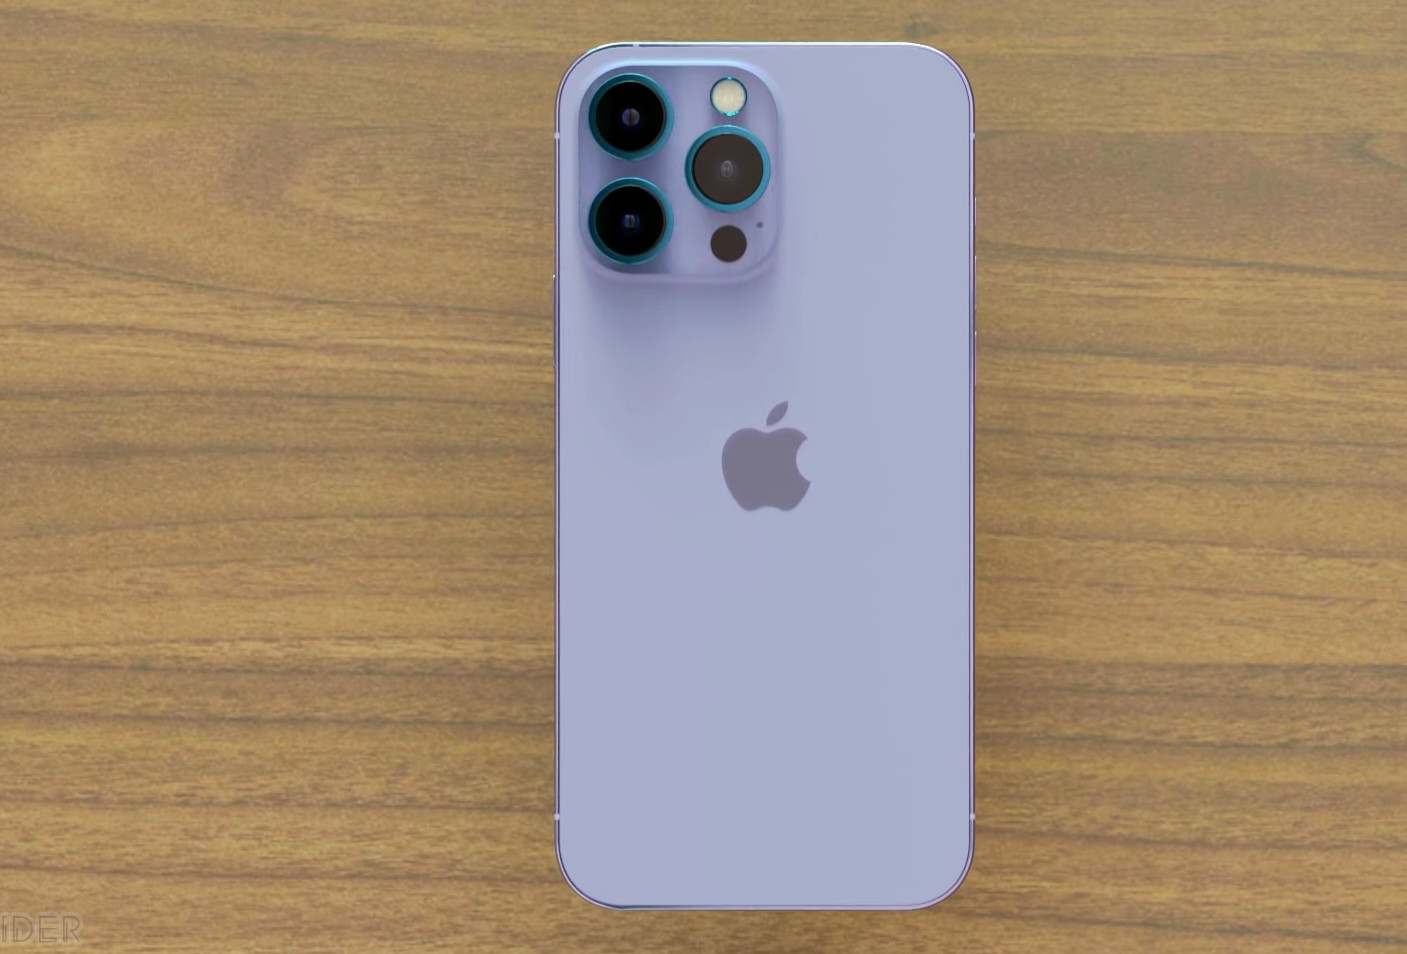 iPhone 14 Pro Max màu tím là lựa chọn đầy thời trang và độc đáo cho những người dùng yêu thích sự sang trọng nhưng không kém phần nổi bật. Bạn có thể biến chiếc điện thoại của mình thành một phụ kiện thời trang đậm chất cá tính với màu tím quý phái.